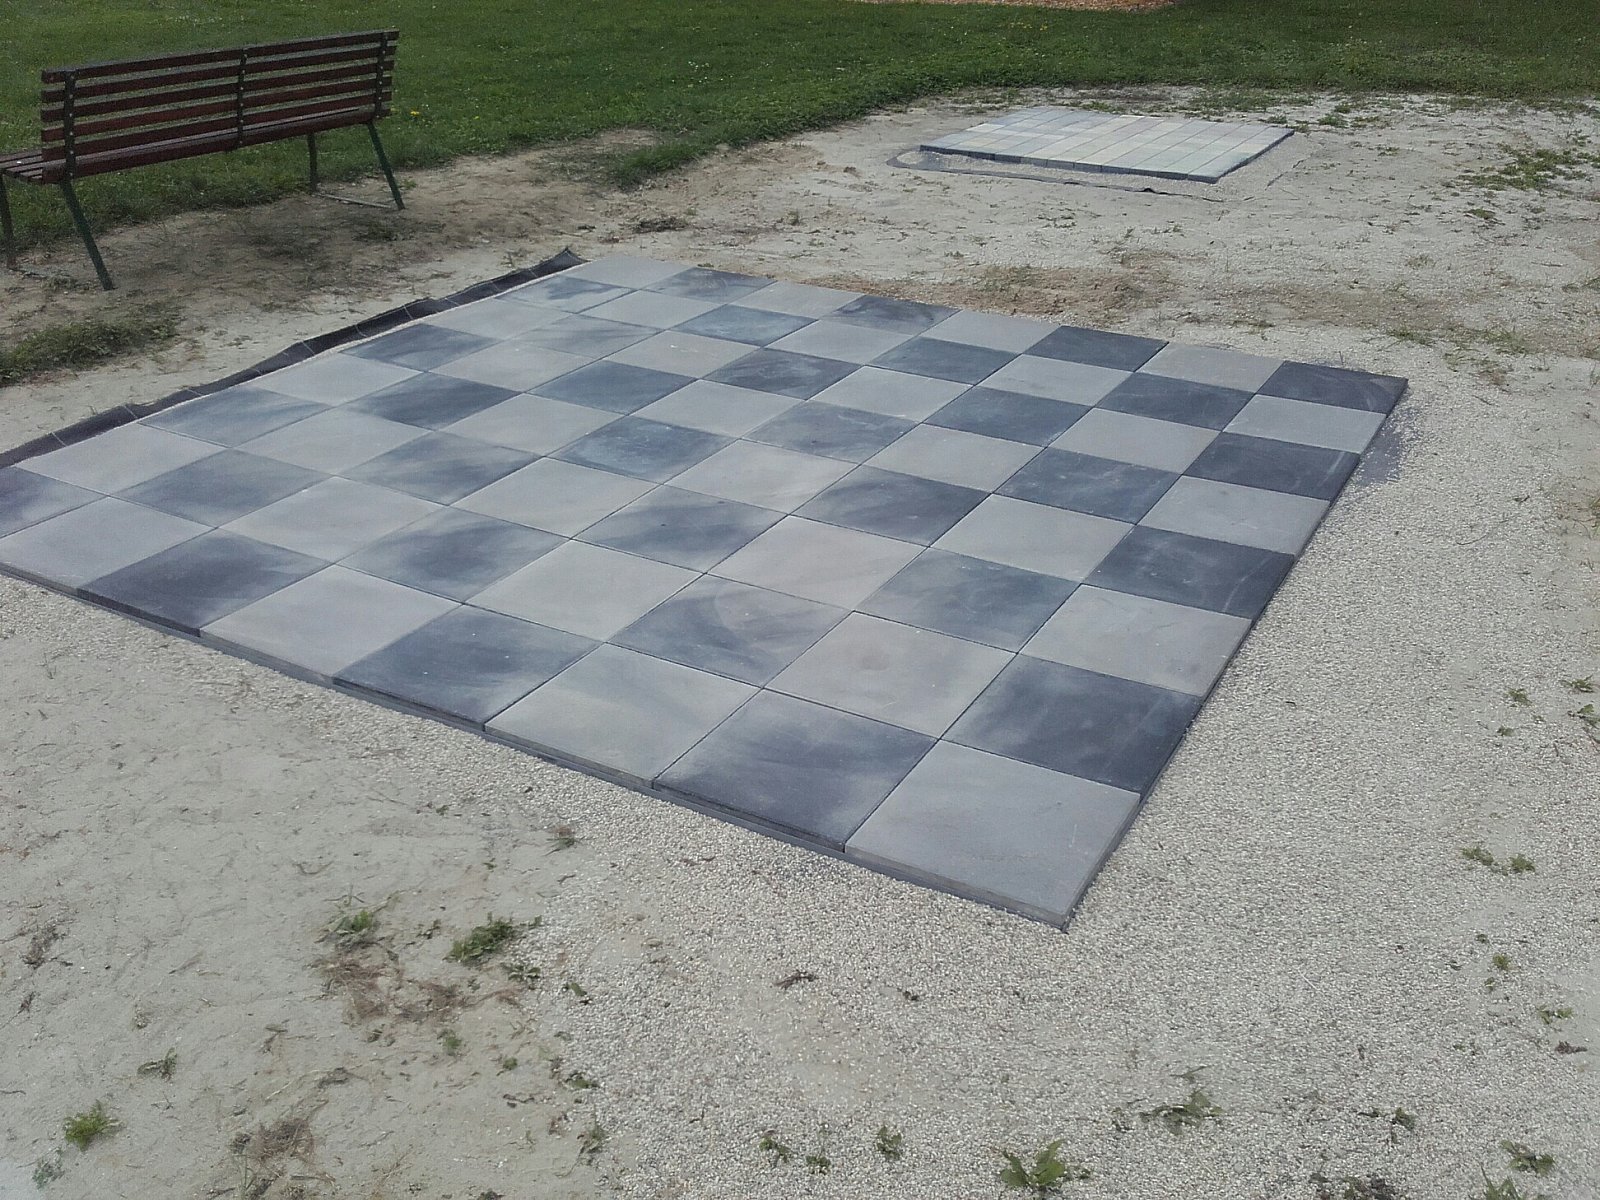 ... Schach und Dame im Großformat verschaffen ein völlig neues Spielgefühl - Renovierung des Sportplatzes, Juni 2019